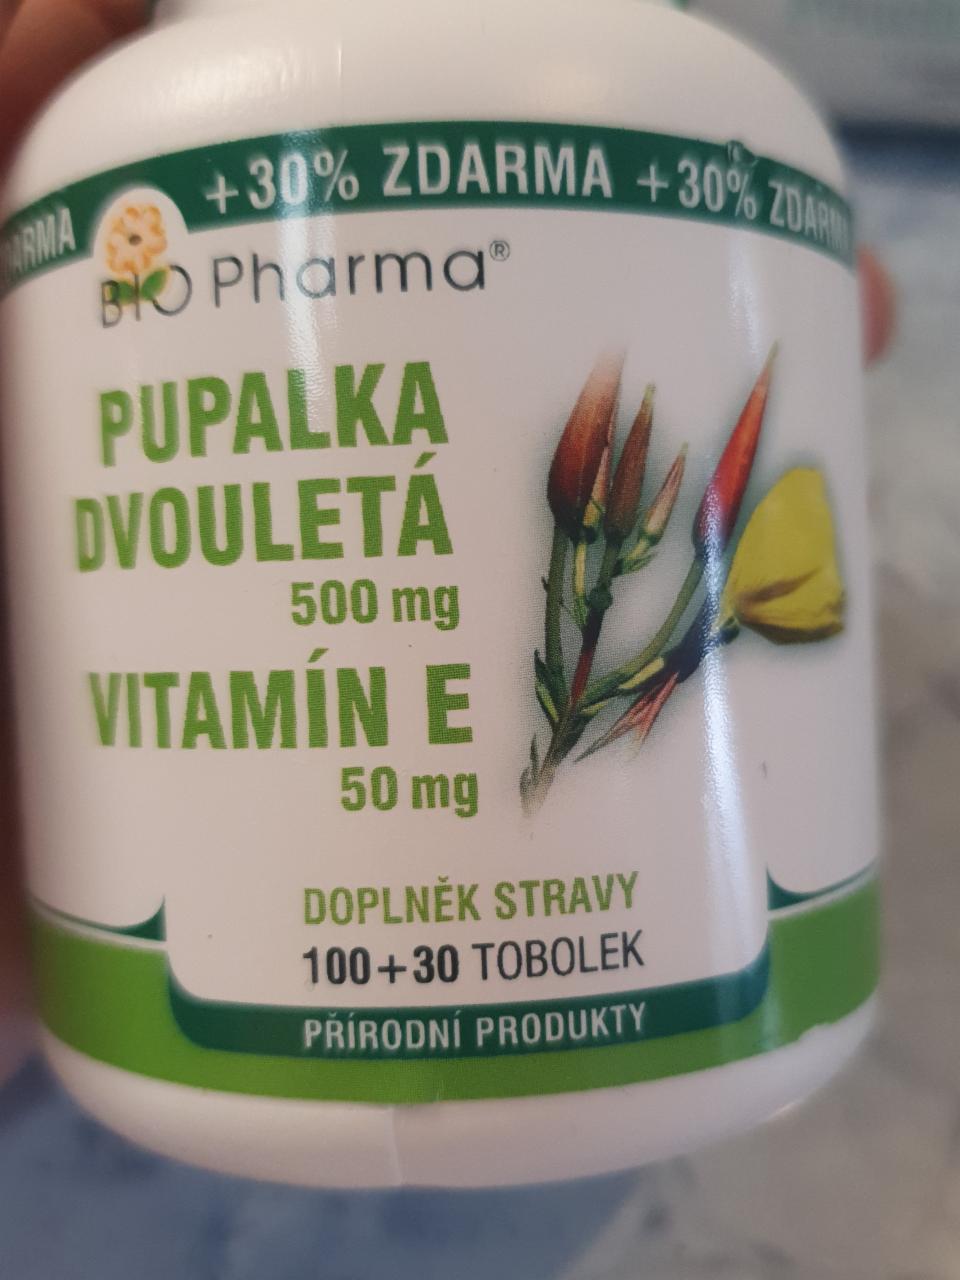 Fotografie - Pupalka dvouletá 500mg+Vitamín E 50mg BIO Pharma